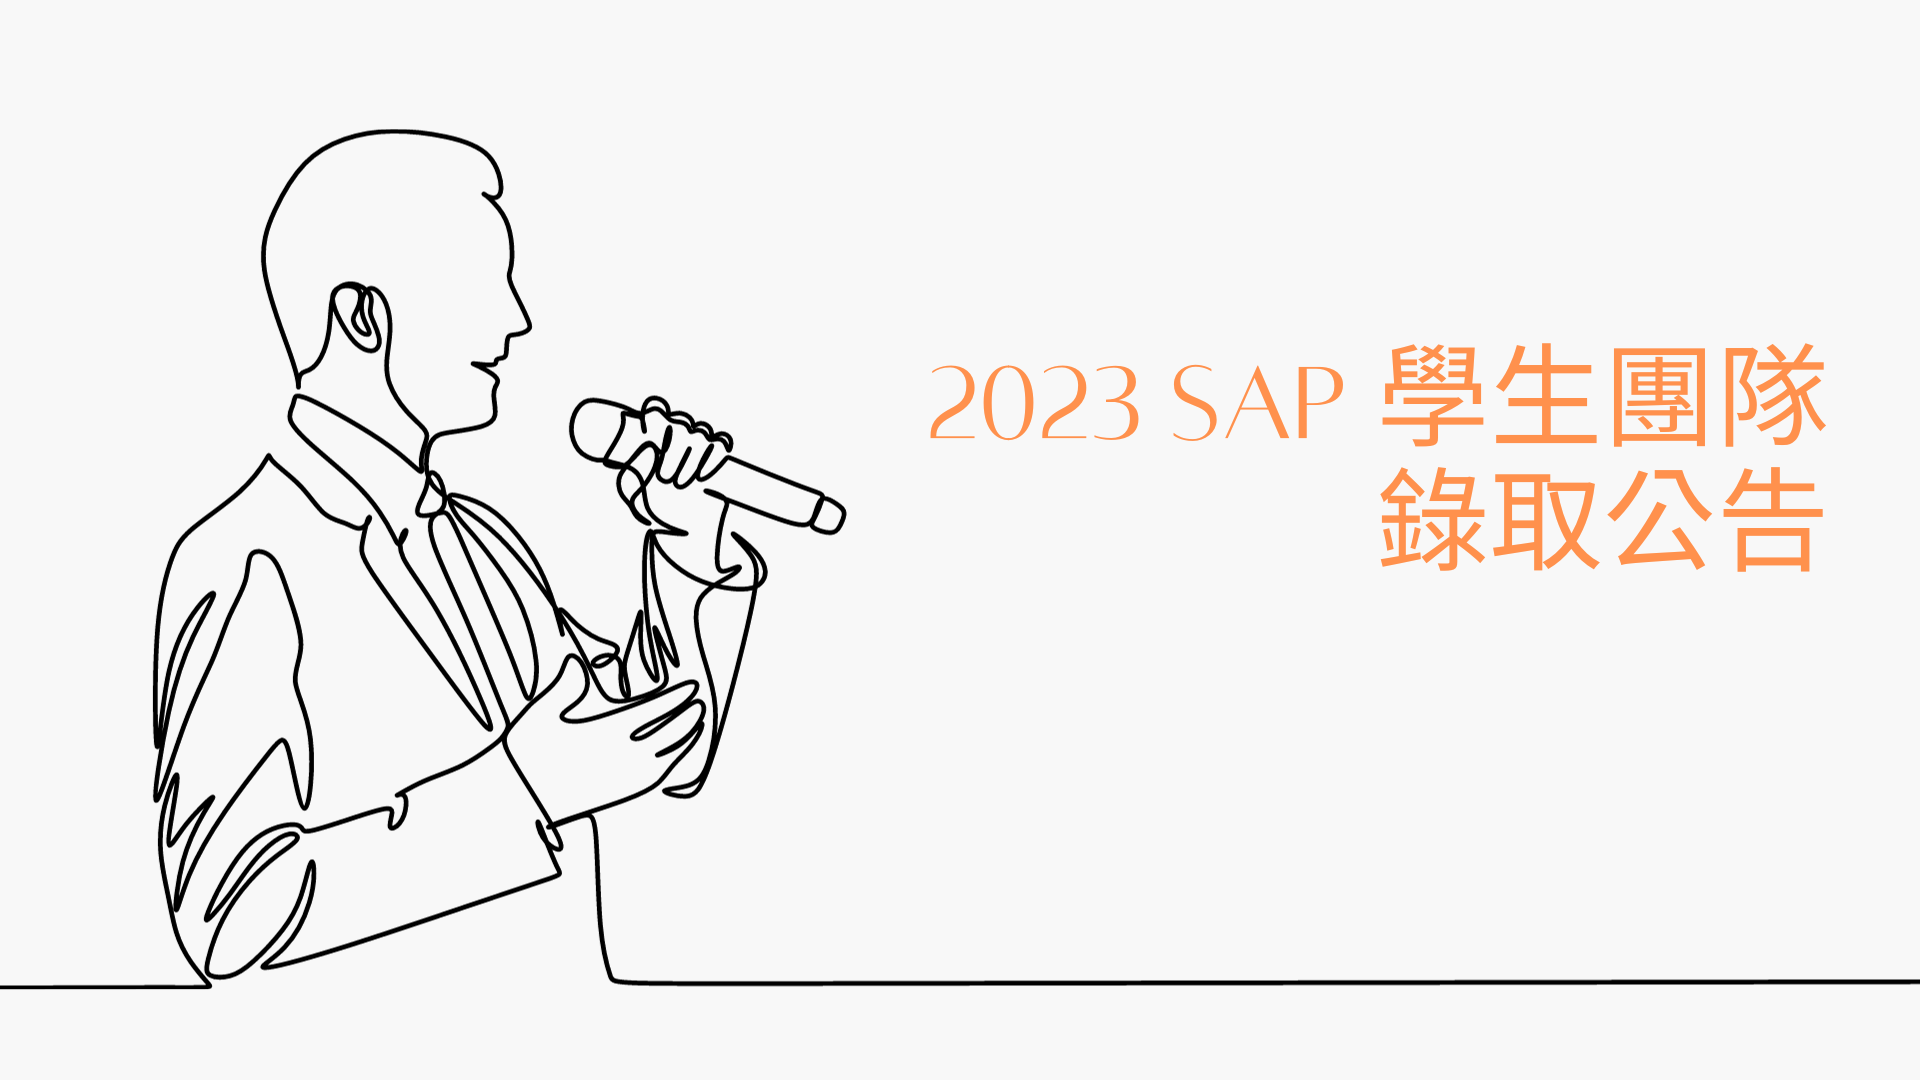 閱讀有關文章的更多信息 2023 SAP學生團隊錄取名單